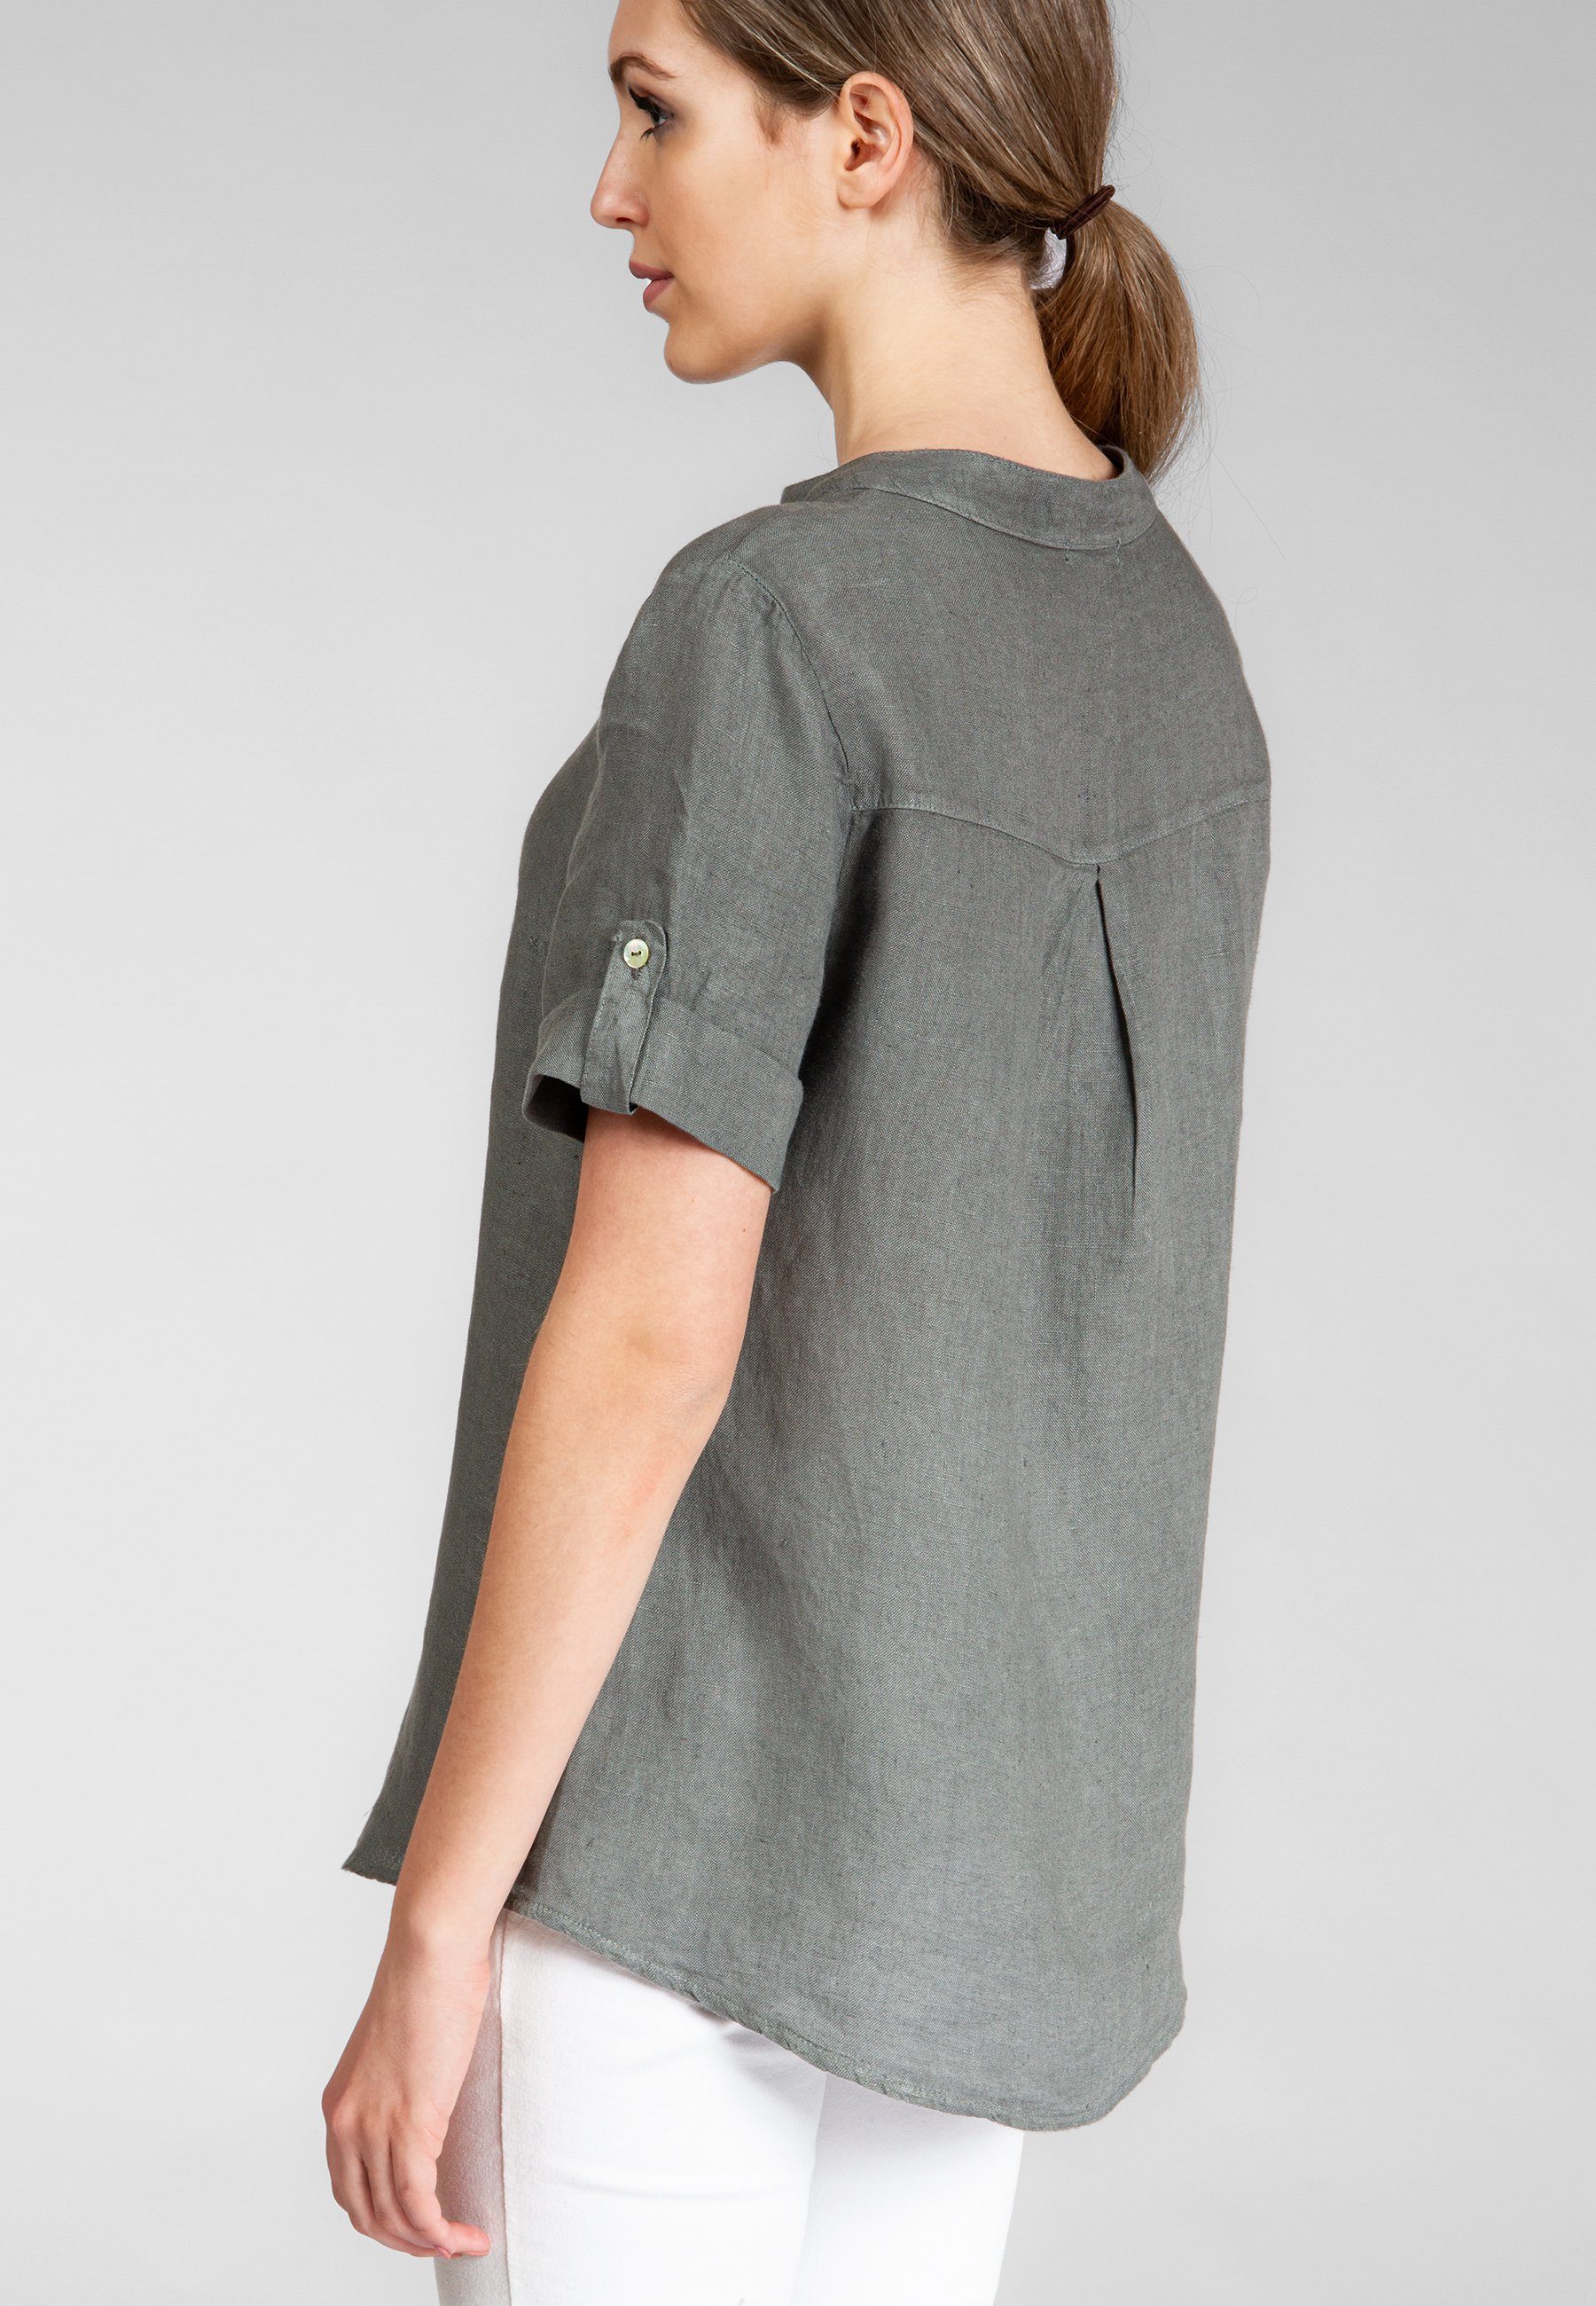 Damen Leinenbluse mit Shirtbluse Halbarm elegante stylischem Caspar grau BLU024 V-Ausschnitt Sommer